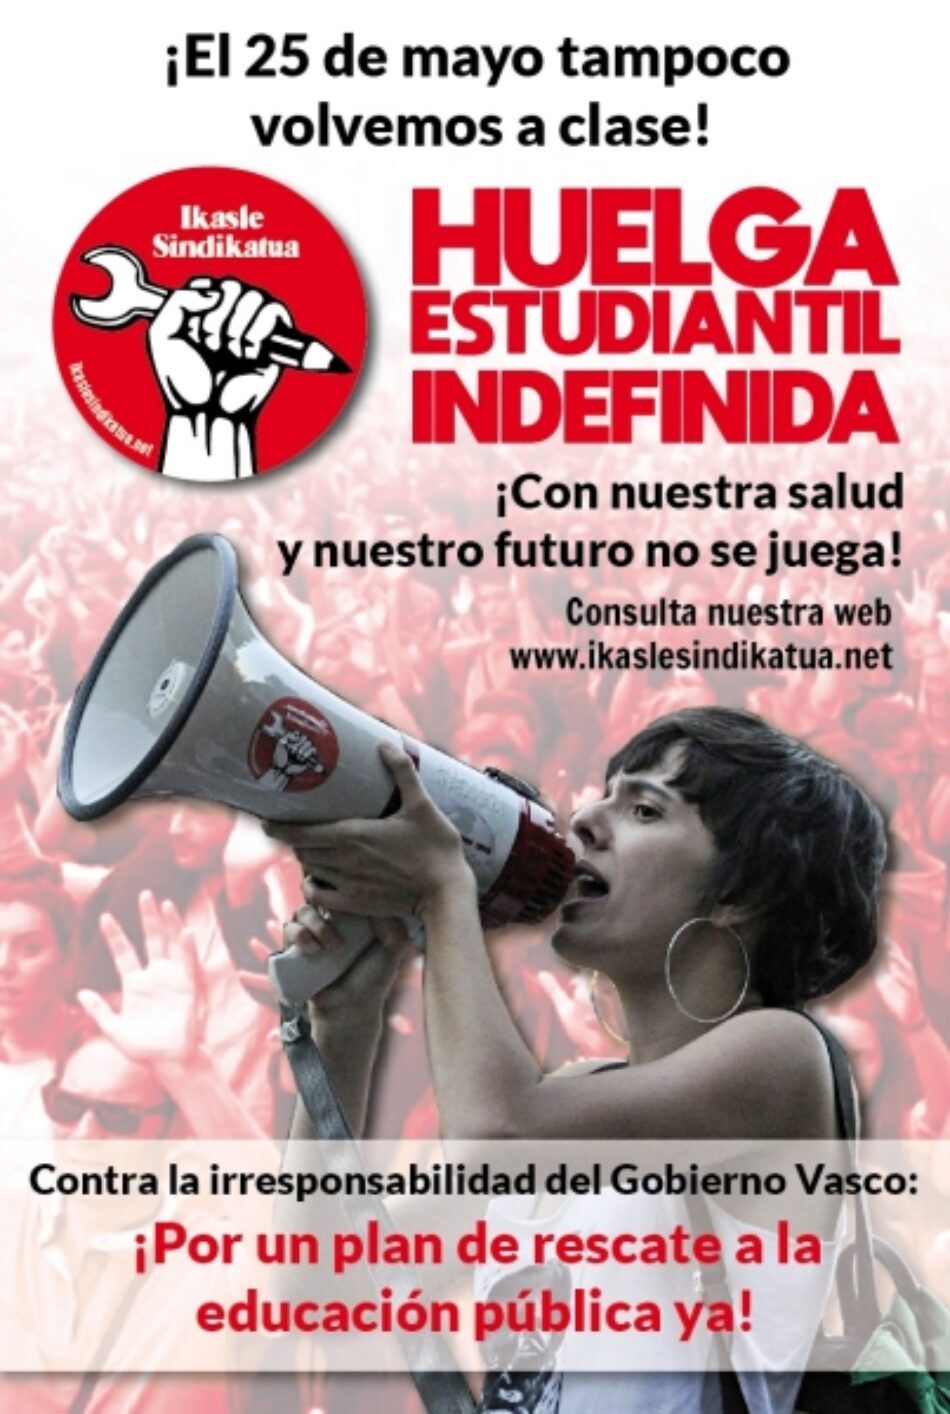 No volvemos a clase: huelga estudiantil indefinida en Euskadi y documento para debatir en el Consejo Escolar del Estado